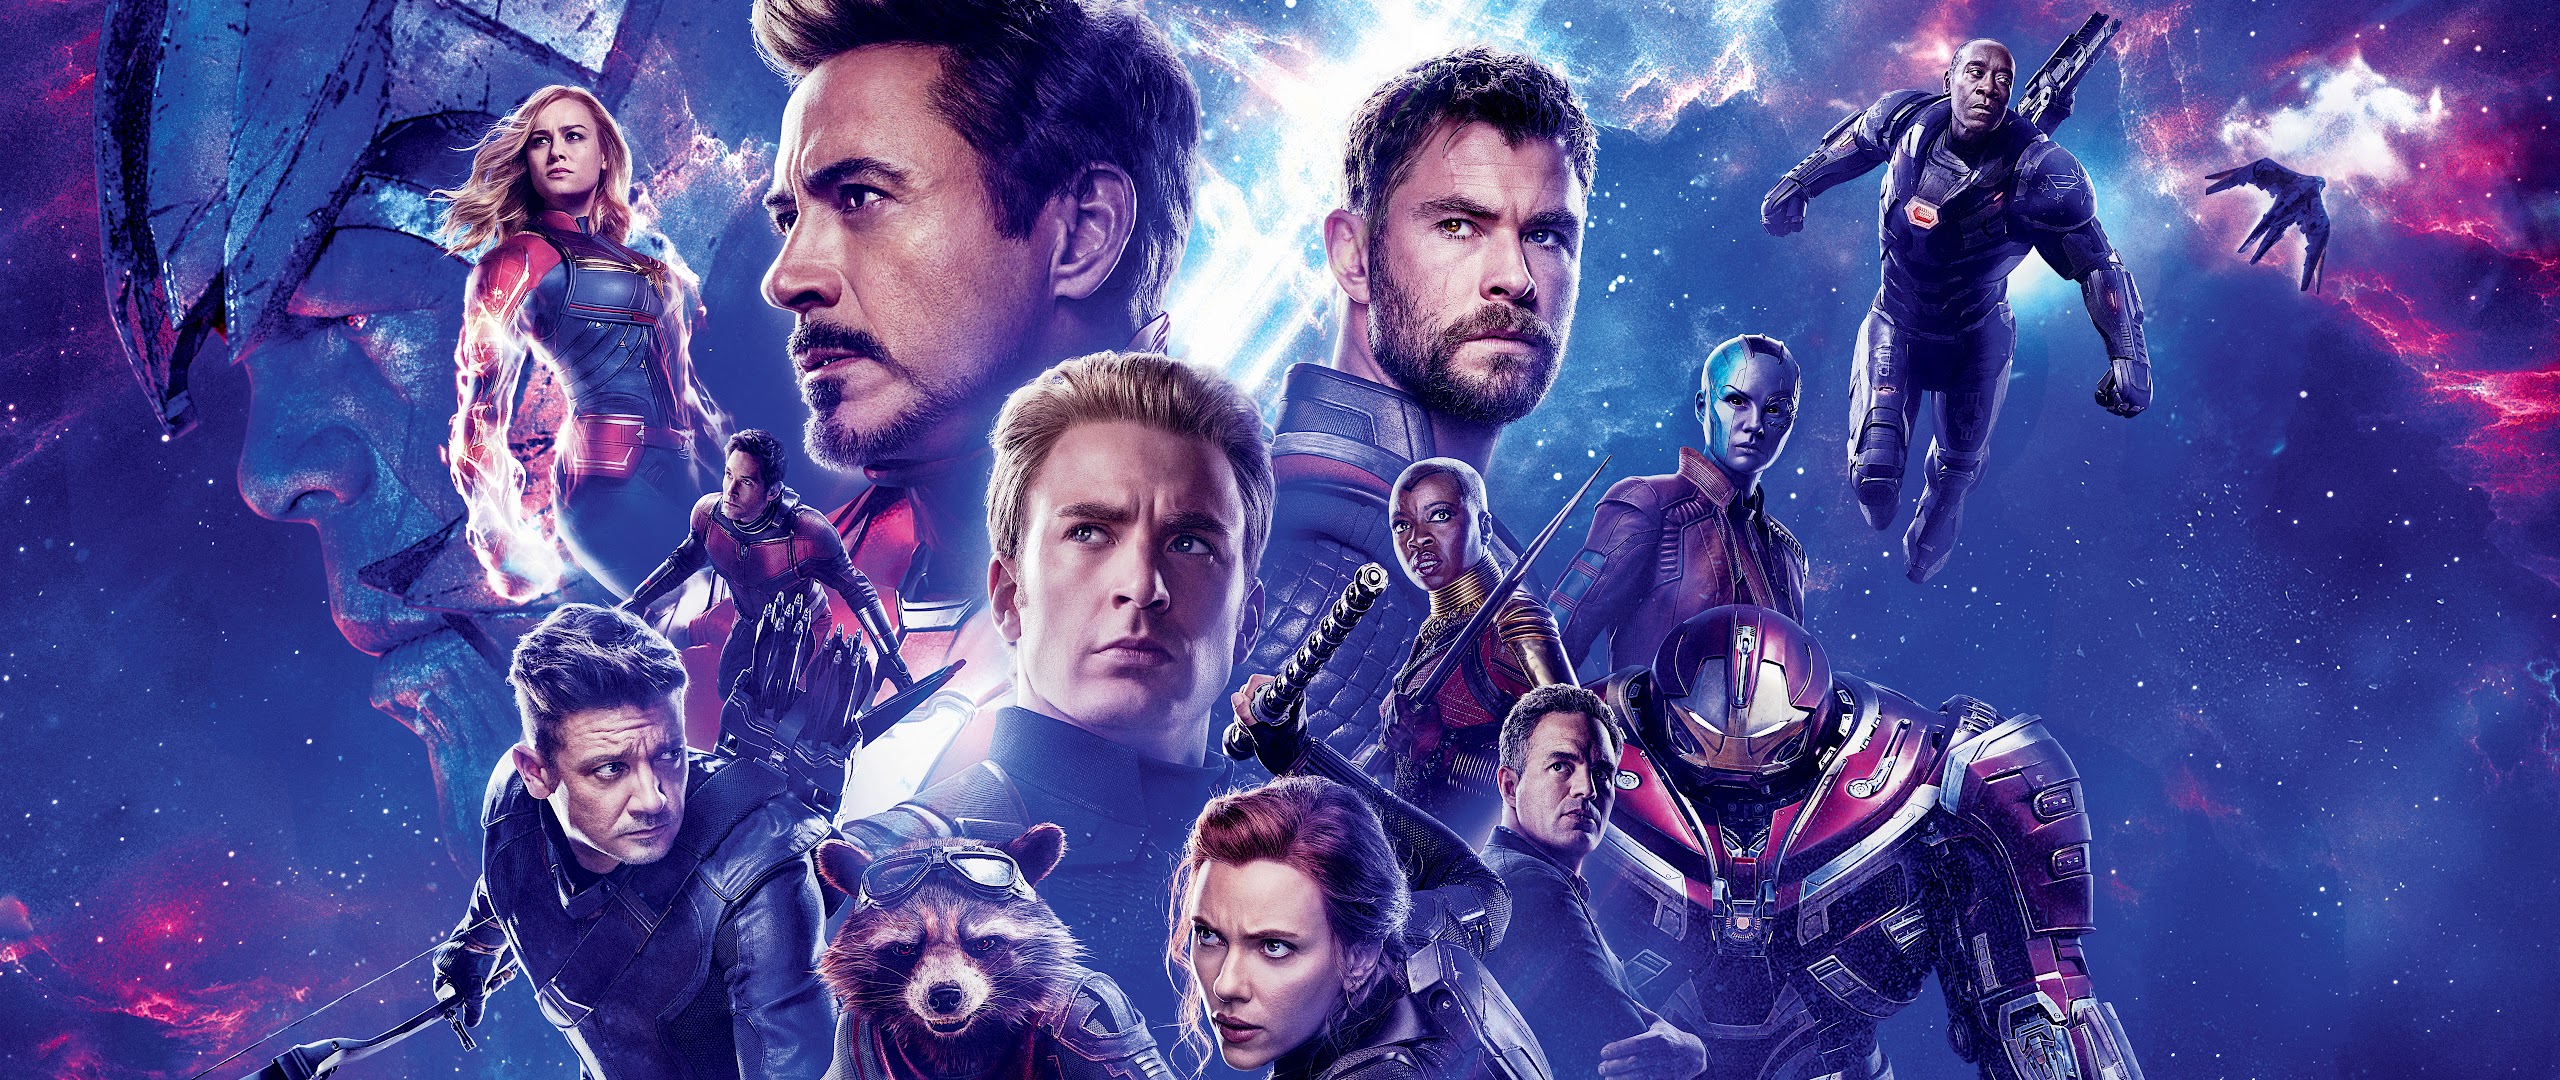 Nebula In Avengers Endgame Wallpapers